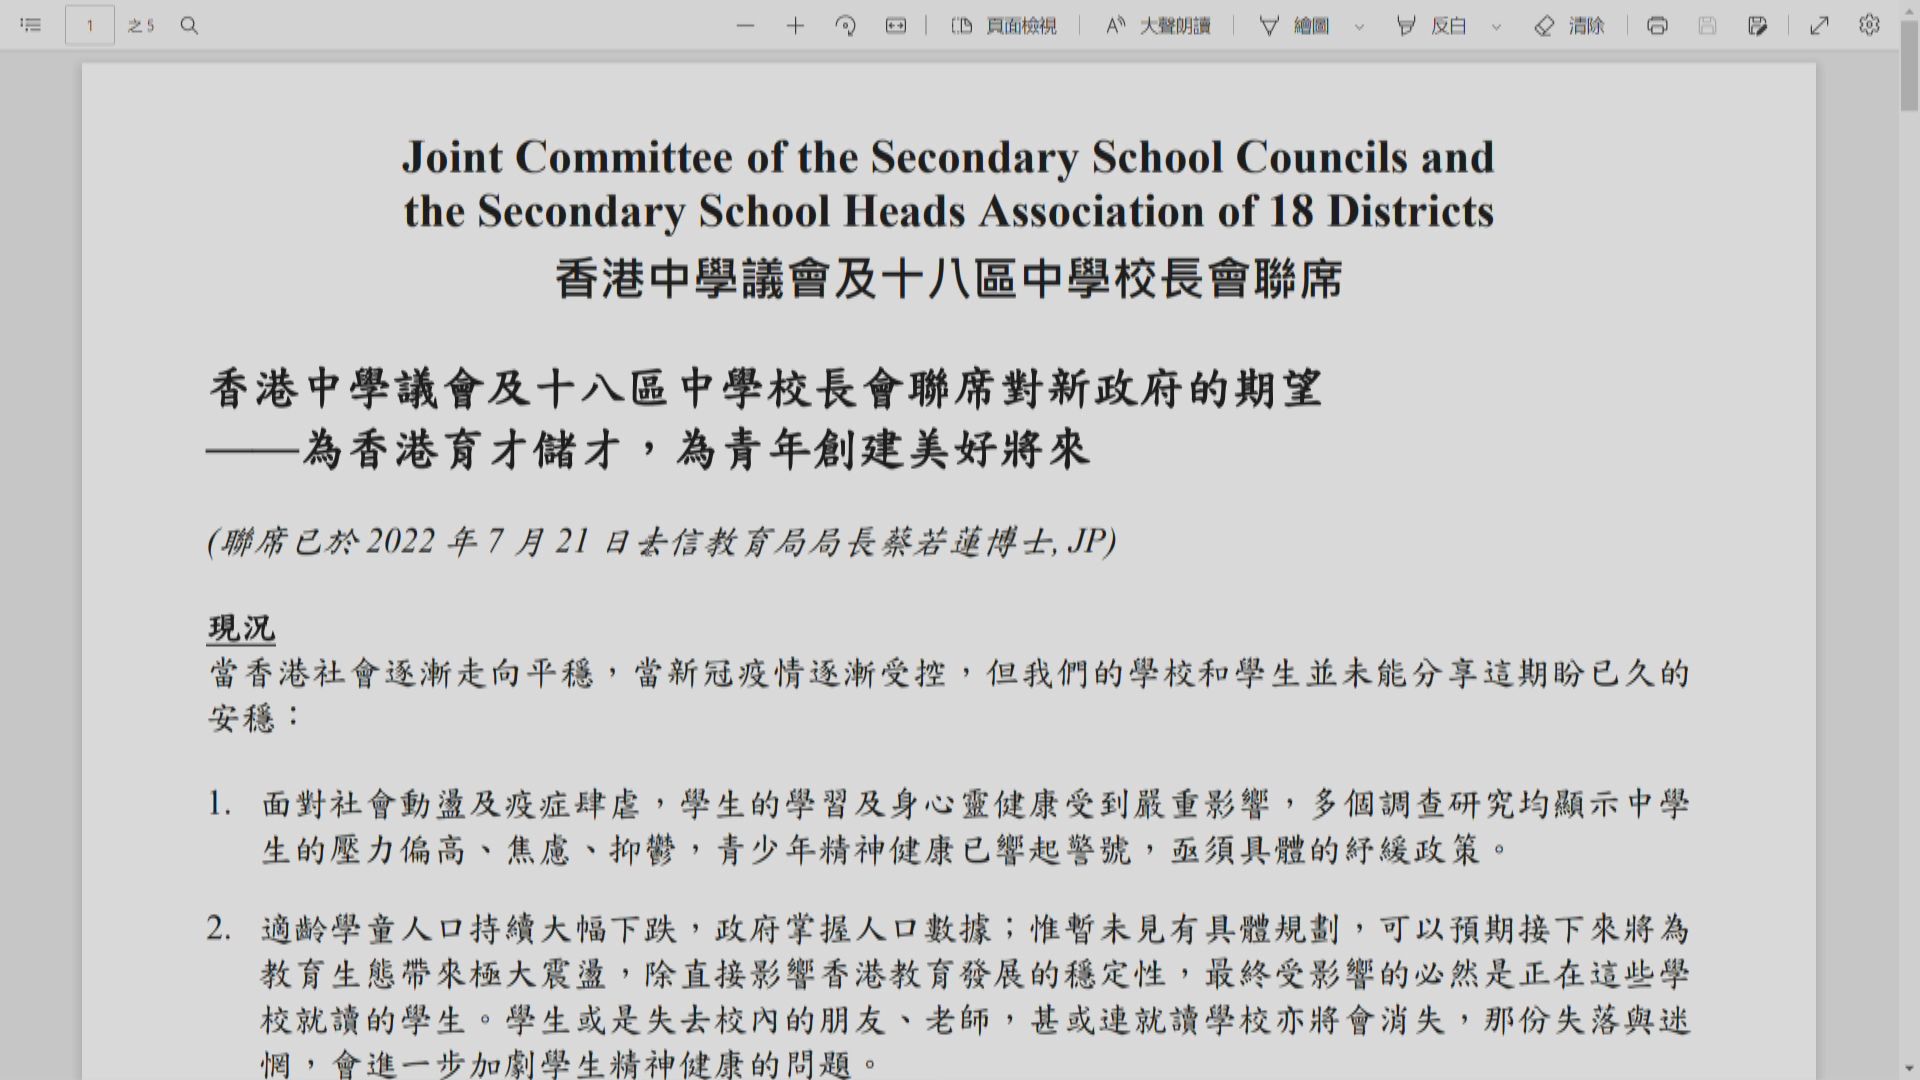 多個中學議會及校長會函蔡若蓮促就學童減少作規劃